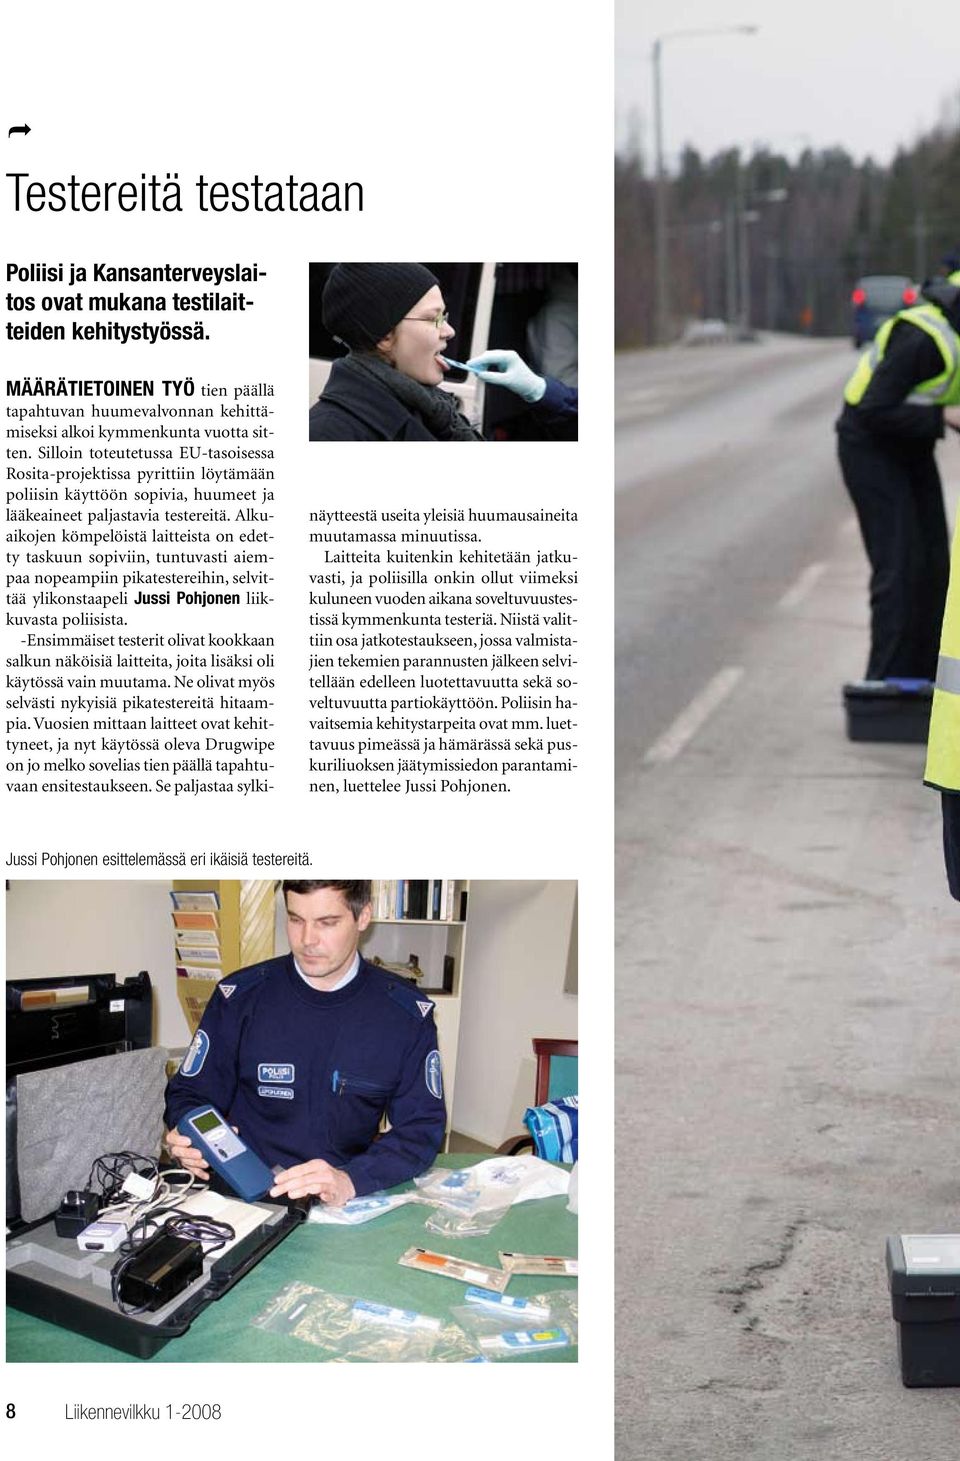 Alkuaikojen kömpelöistä laitteista on edetty taskuun sopiviin, tuntuvasti aiempaa nopeampiin pikatestereihin, selvittää ylikonstaapeli Jussi Pohjonen liikkuvasta poliisista.